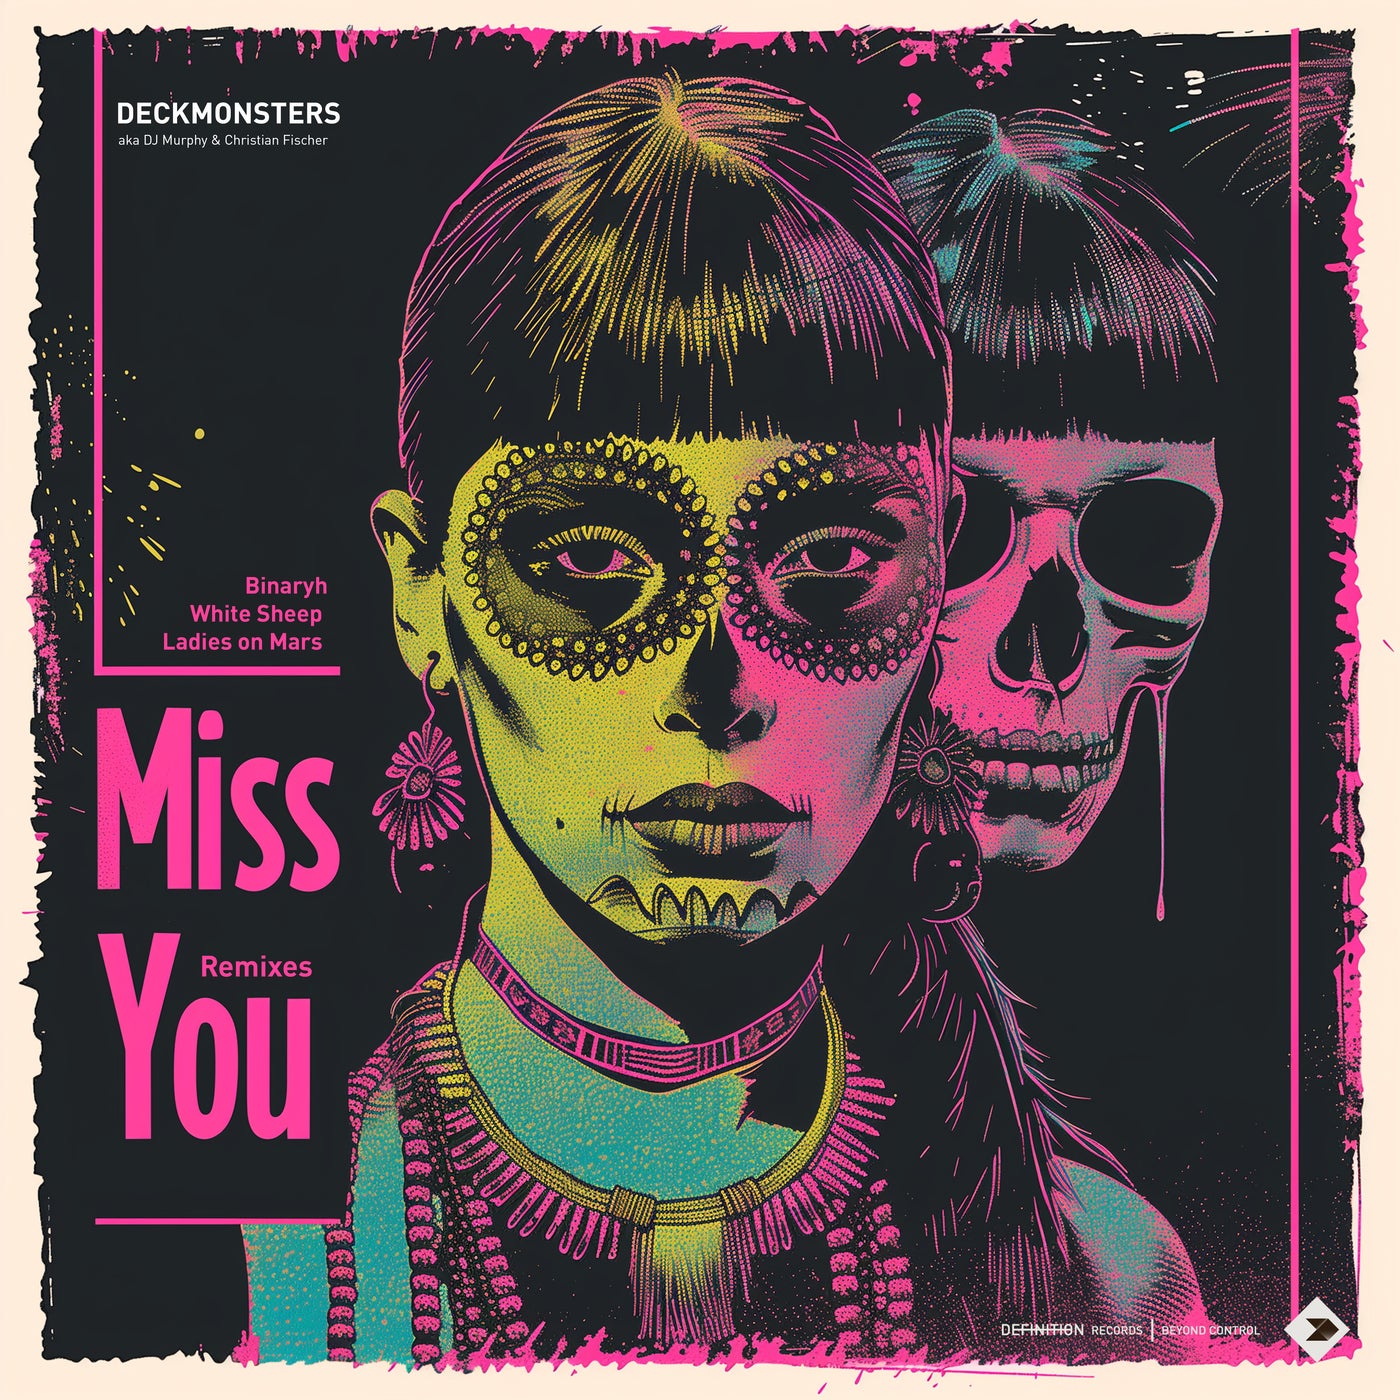 Cover - Christian Fischer, DJ Murphy, Deckmonsters - Miss You (Binaryh Remix)